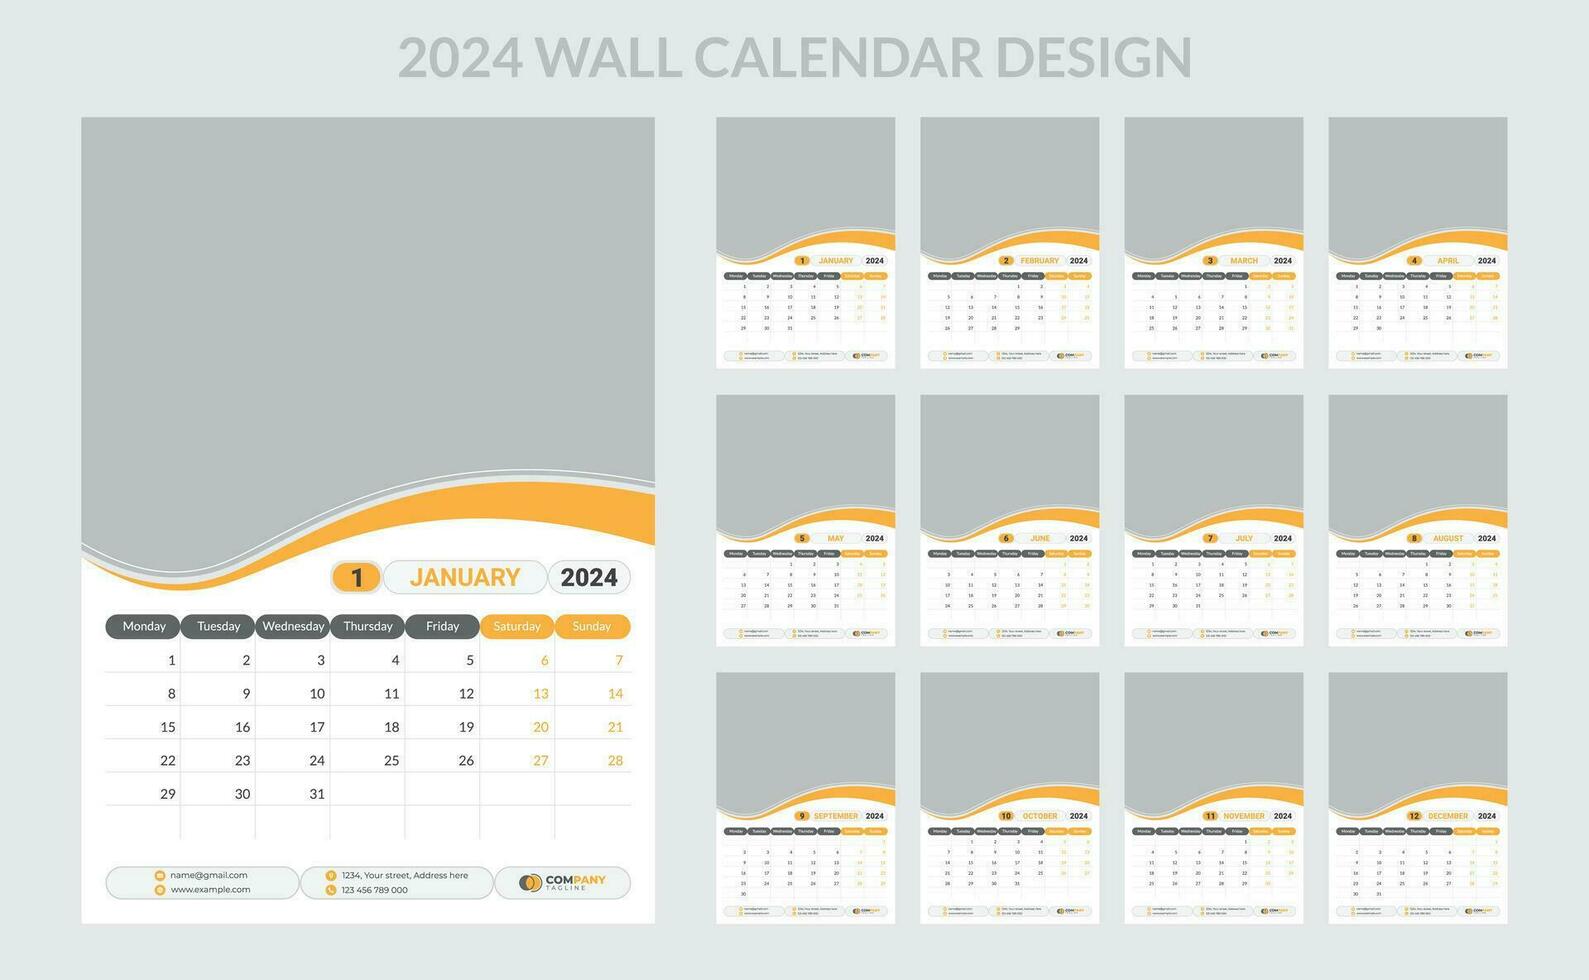 2024 Business Wall Calendar template set. 12 page wall calendar. vector